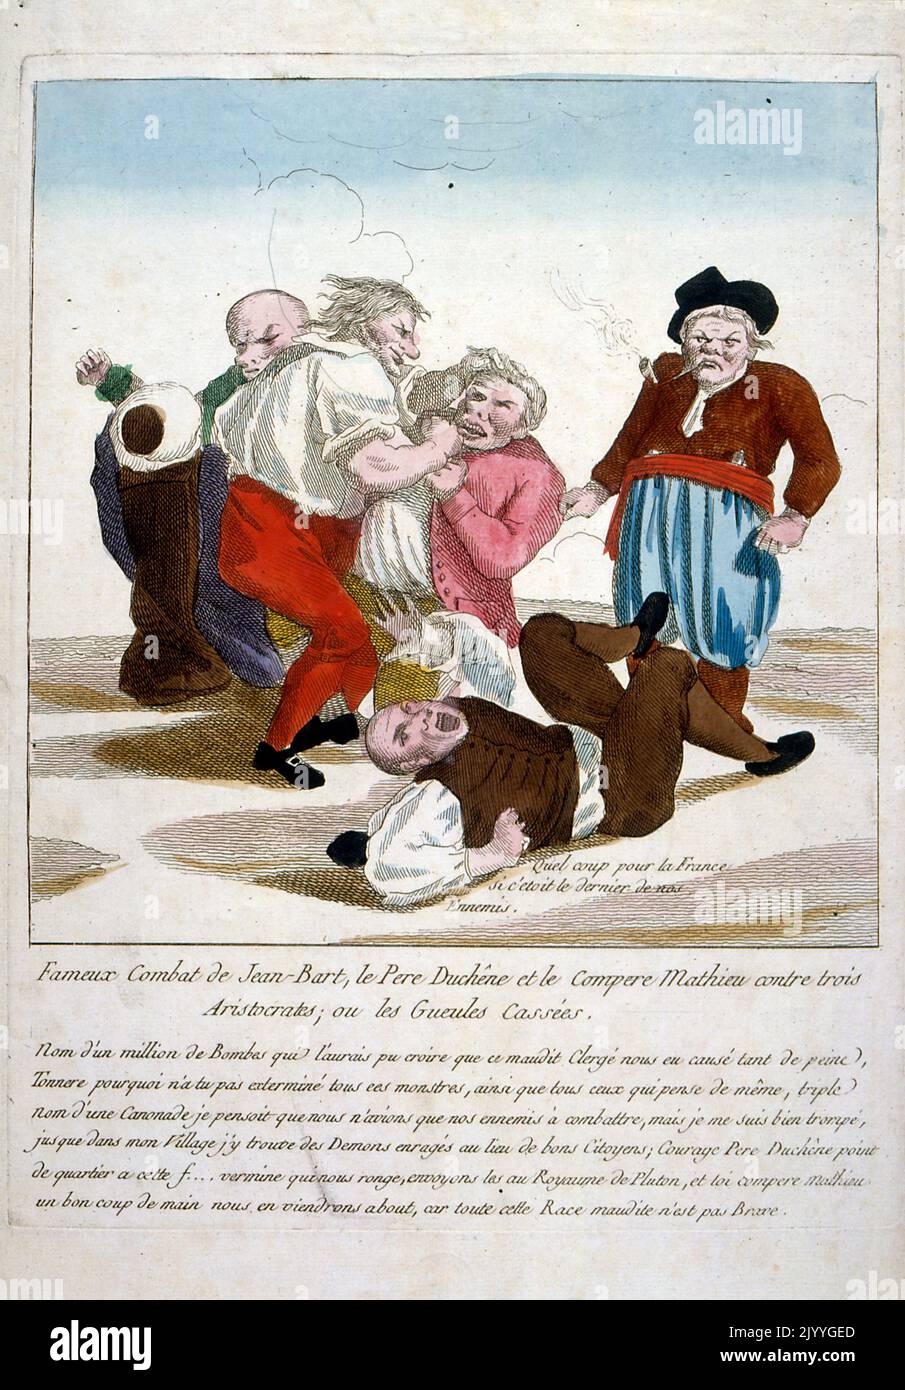 Farbige Illustration, die Männer zeigt, die in einer Schlägerei kämpfen, die der berühmte Kampf zwischen Jean-Bart, Pater Duchene und dem Komplizen Matthew war, und drei Aristokraten, wo sie sie verprügelten; Französische Revolution. Stockfoto